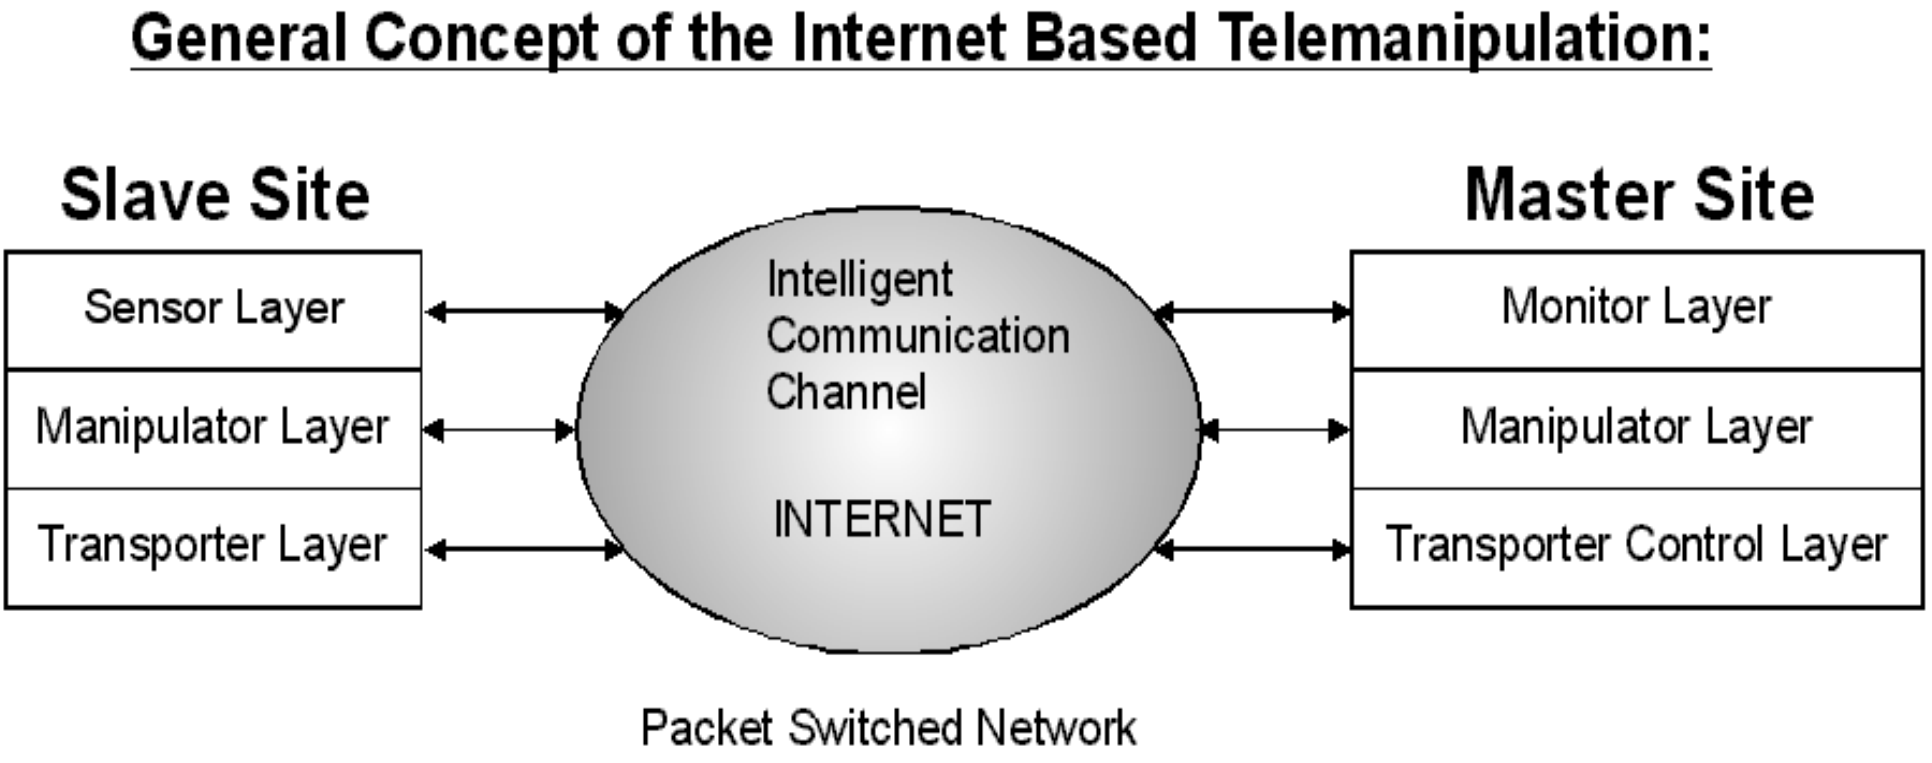 Réteg definíciók az internet alapú Telemanipuláció általános koncepciójához.